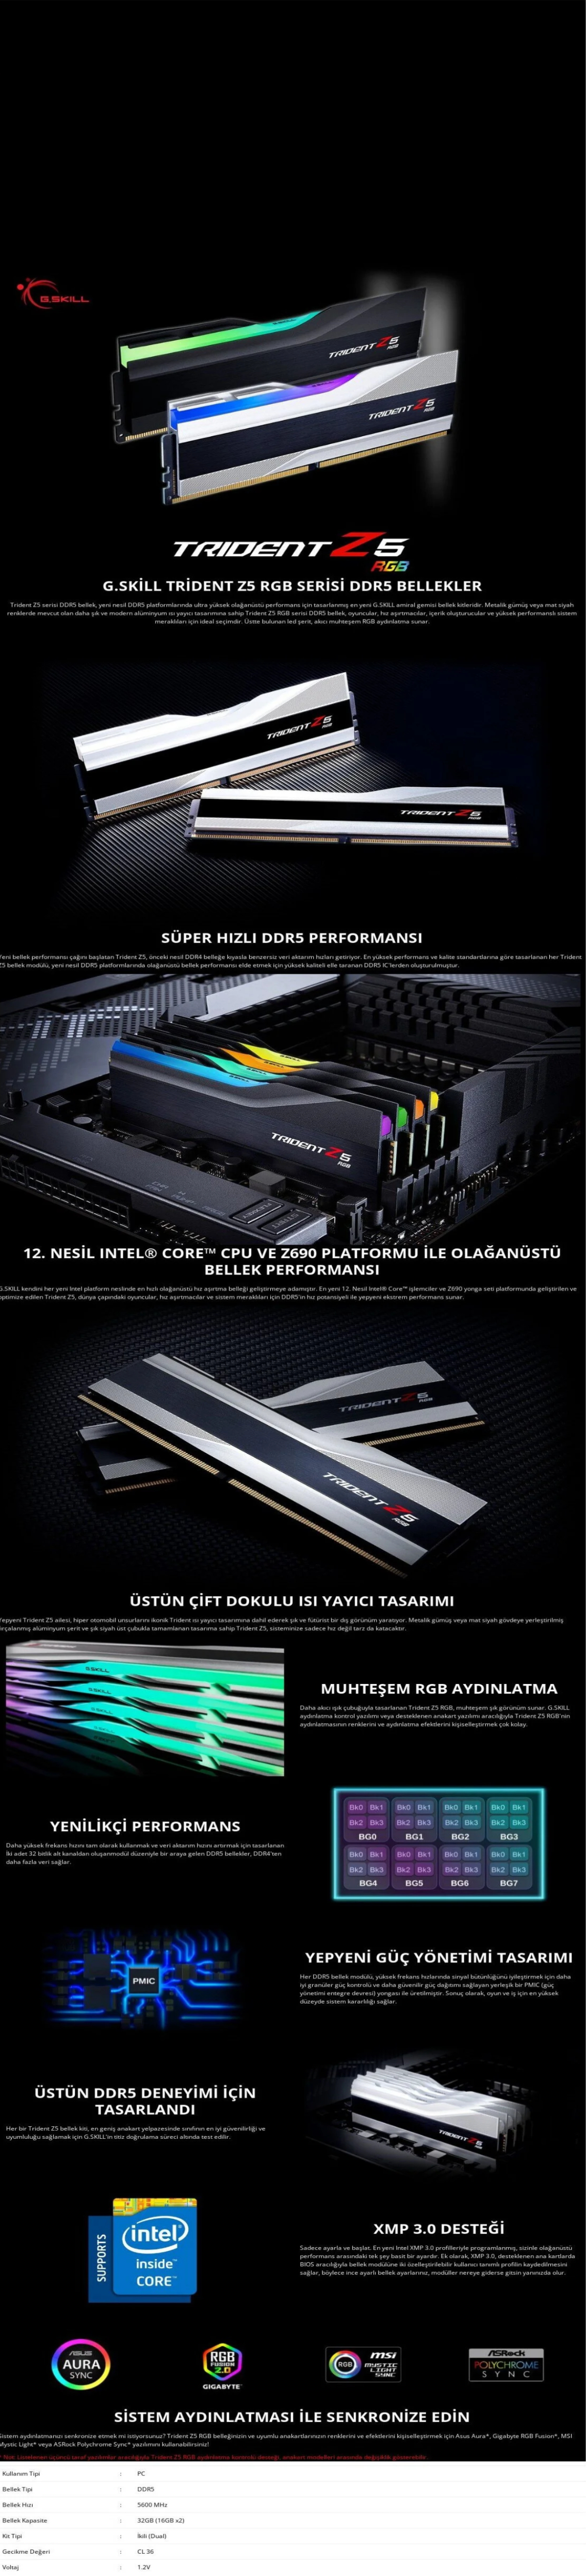 DDR5 Ram